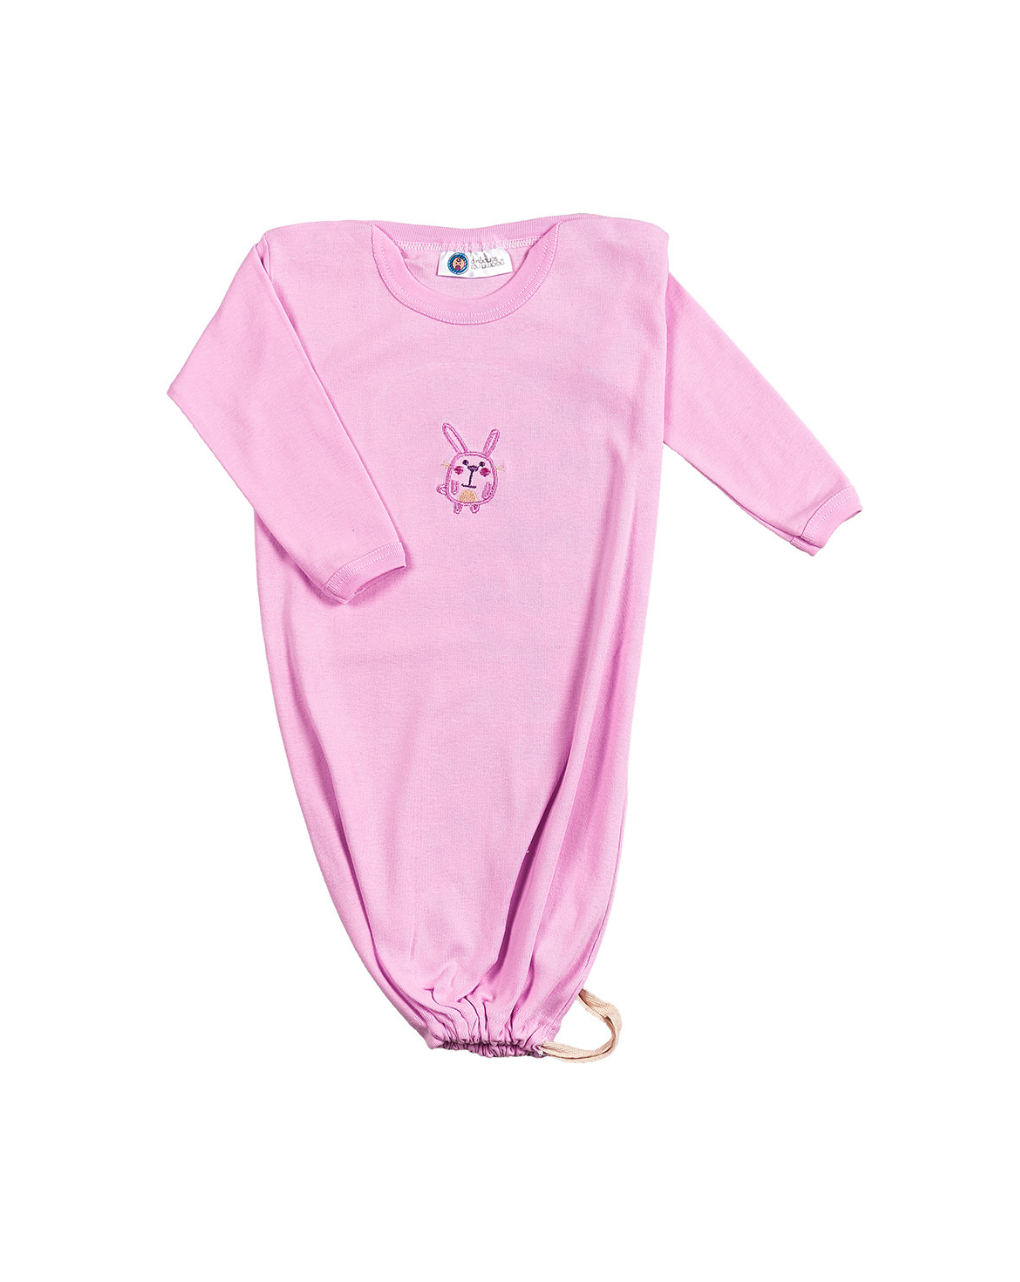 ο κόσμος του μωρού νυχτικάκι-σάκος elephant ροζ 98521